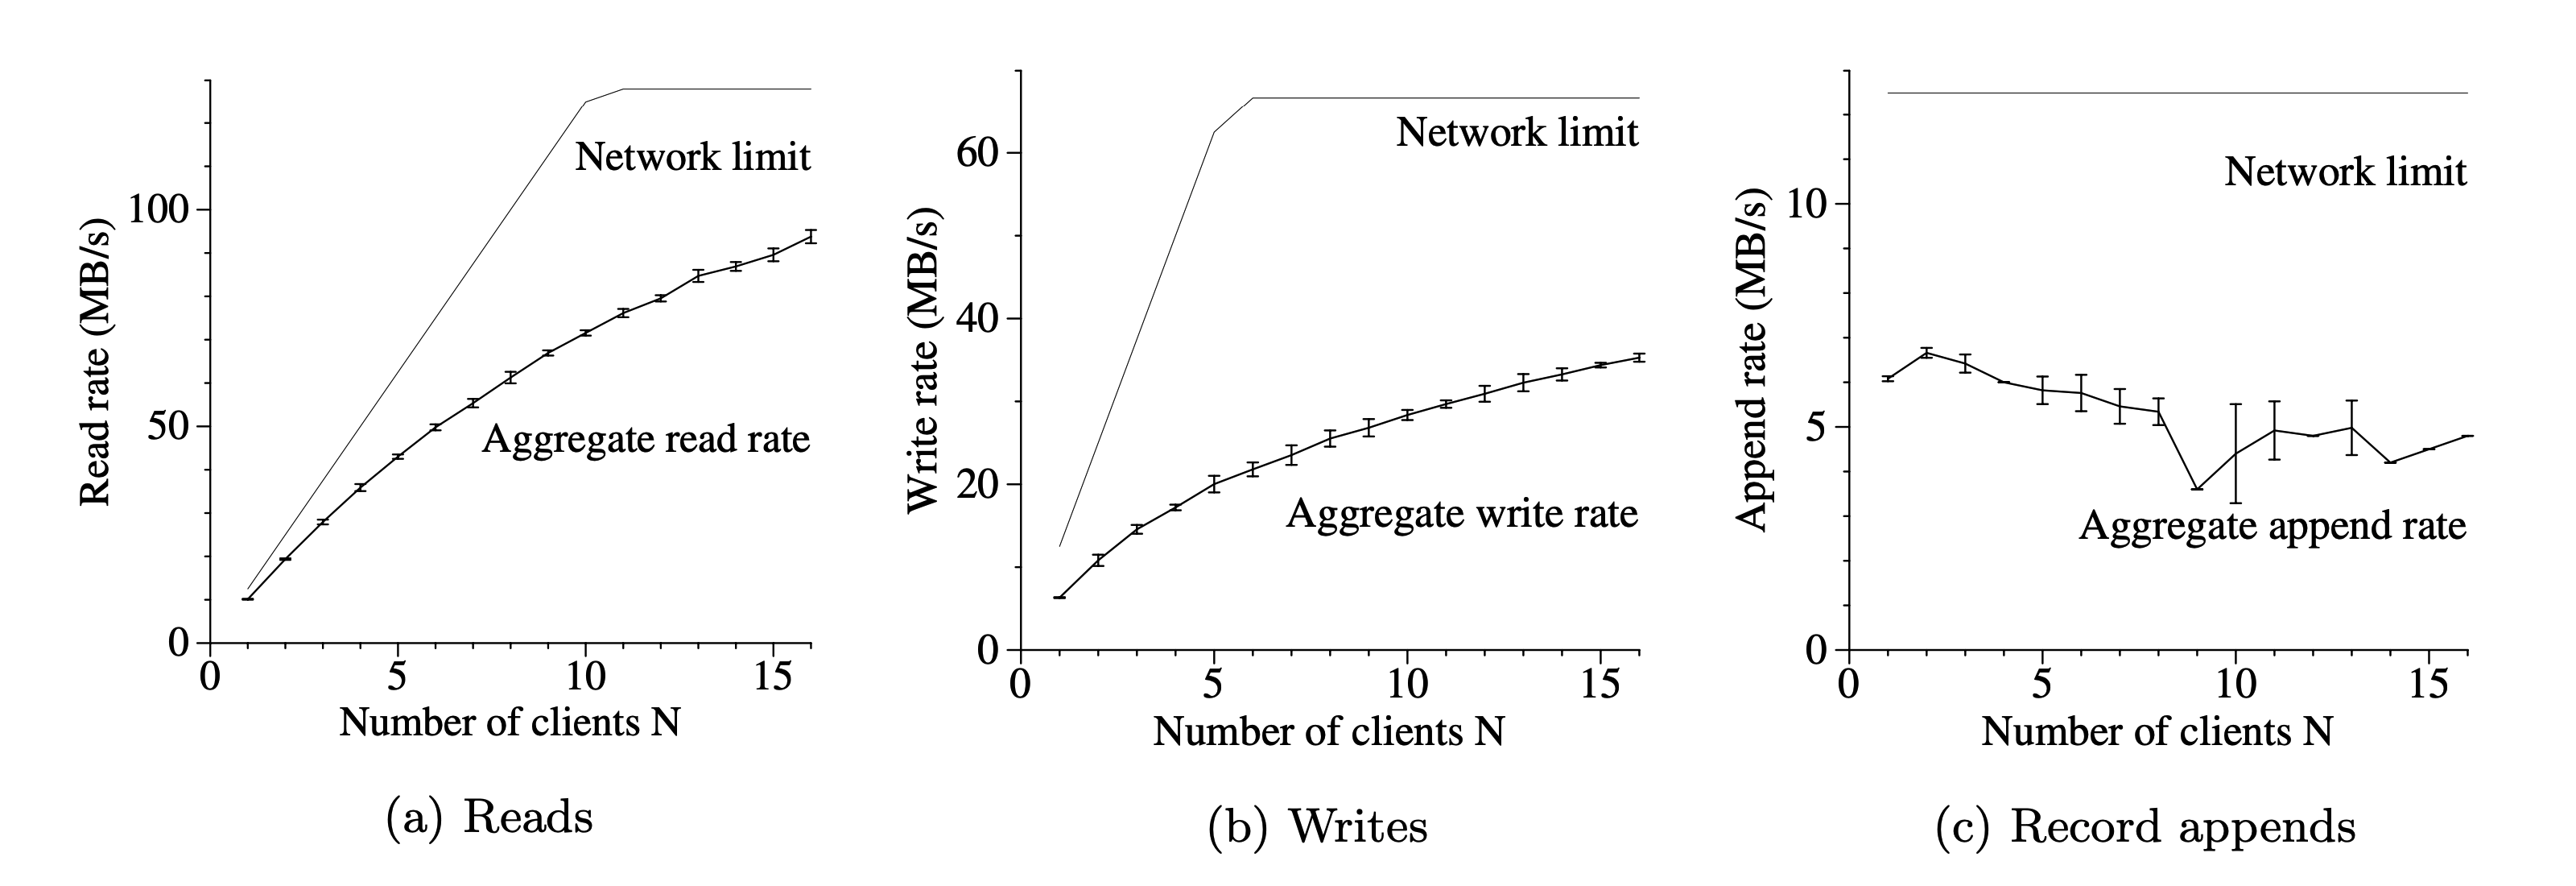 图 3: 总吞吐量。上面的曲线（即 Network limit）表示由我们网络拓扑决定的理论极限。下面的曲线（即 Aggregate read rate）表示我们测量得到的吞吐量，这个曲线具有显示 95% 置信区间的误差线，由于测量值的方差较低，在某些情况下，这些区间难以辨认。